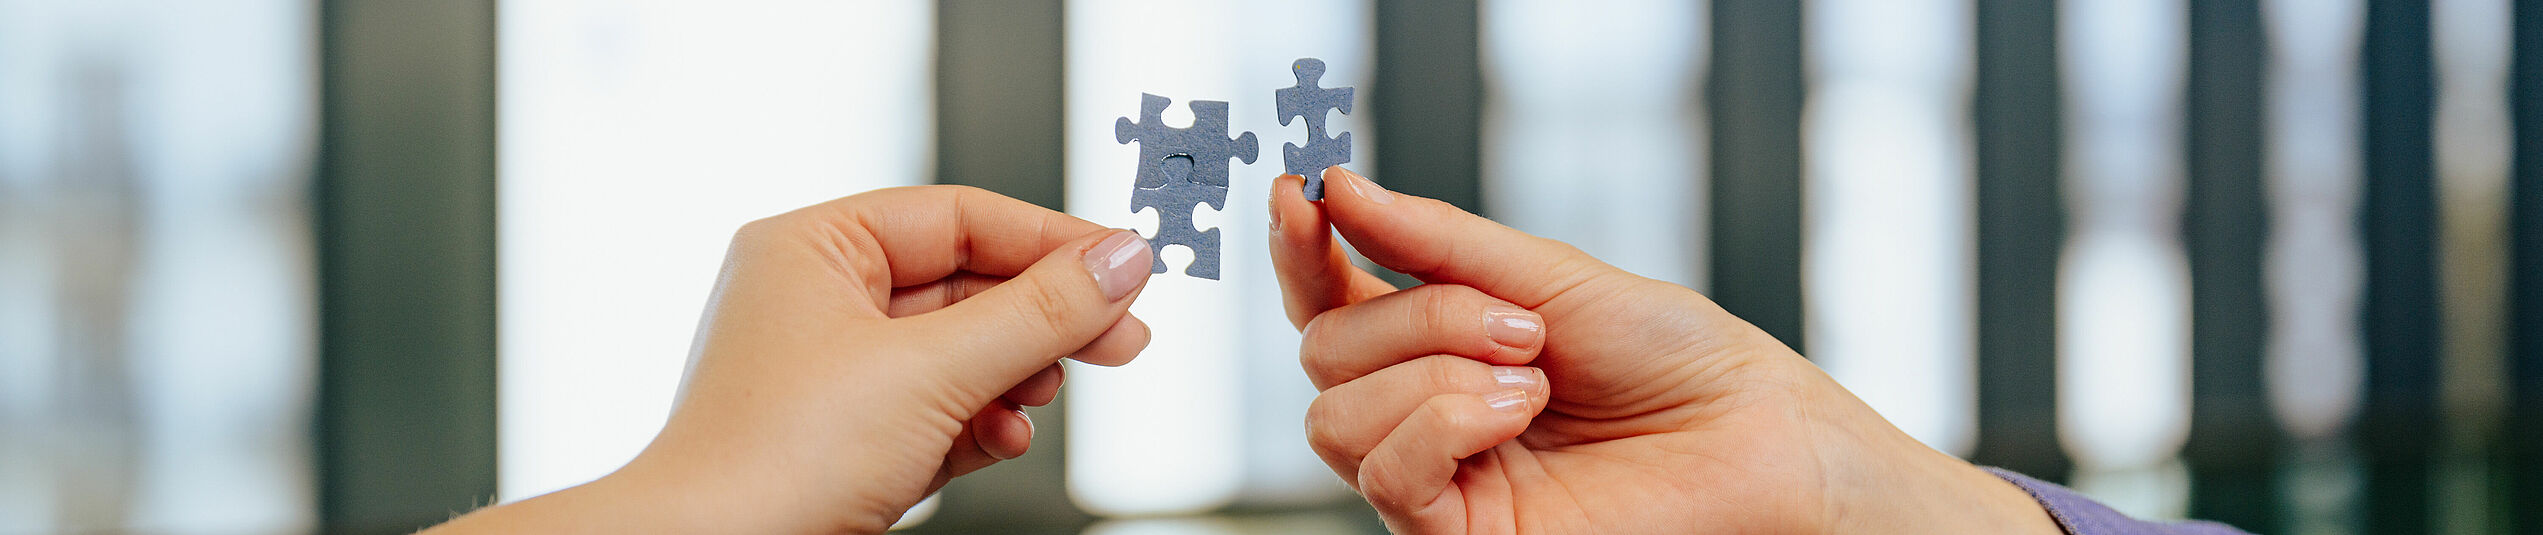 Eine linke Hand hält zwei ineinander verhakte graue Puzzle-Teile, eine rechte Hand ein einzelnes graues Puzzle-Teil